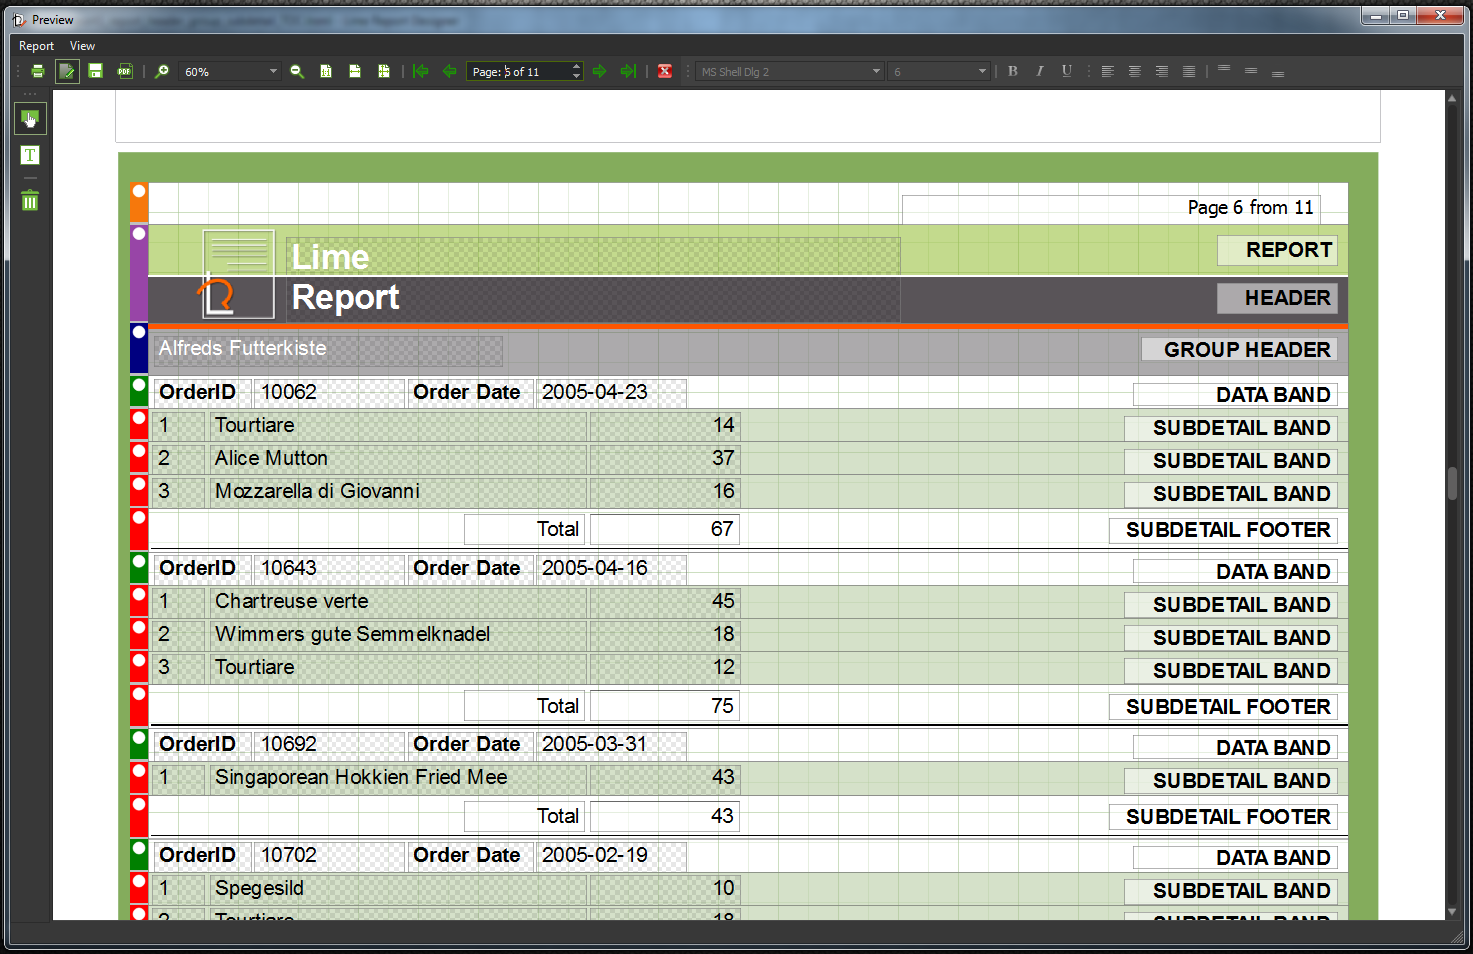 LimeReport C++/Qt Report Generator Tool - Screenshots